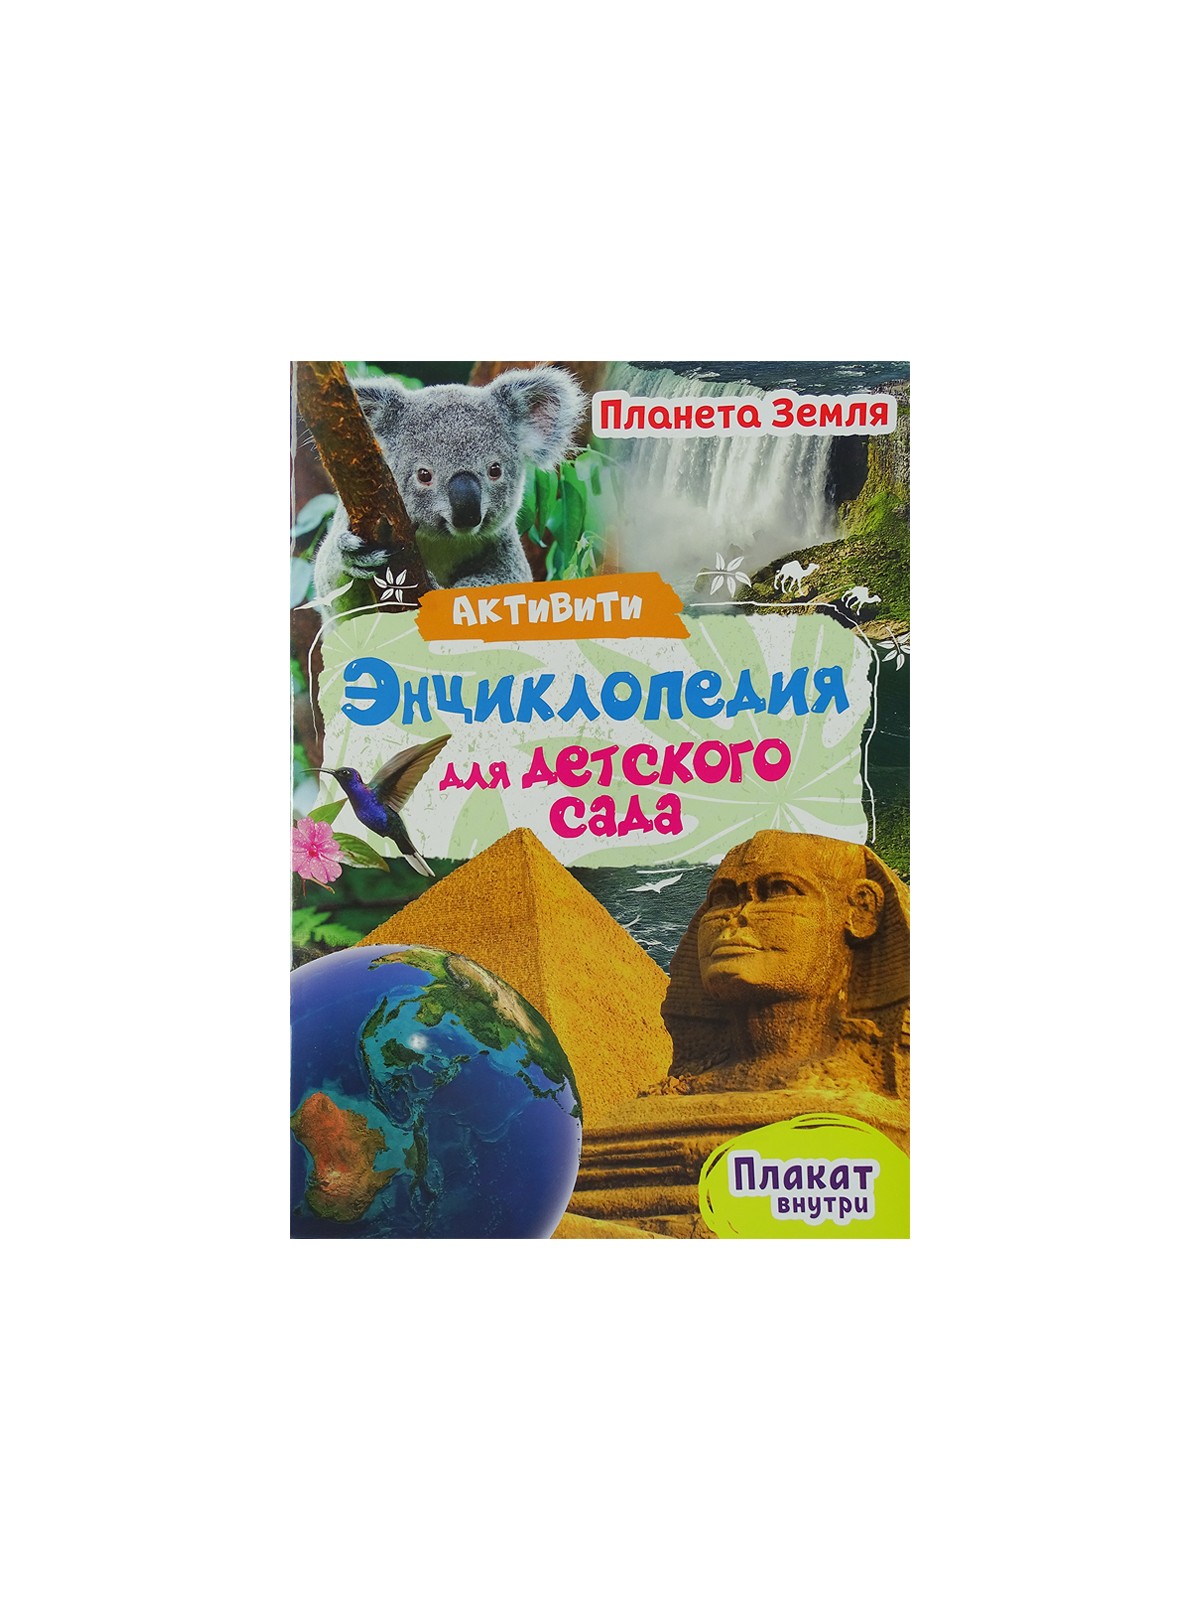 Активити-Энциклопедия для детского сада, в ассортименте